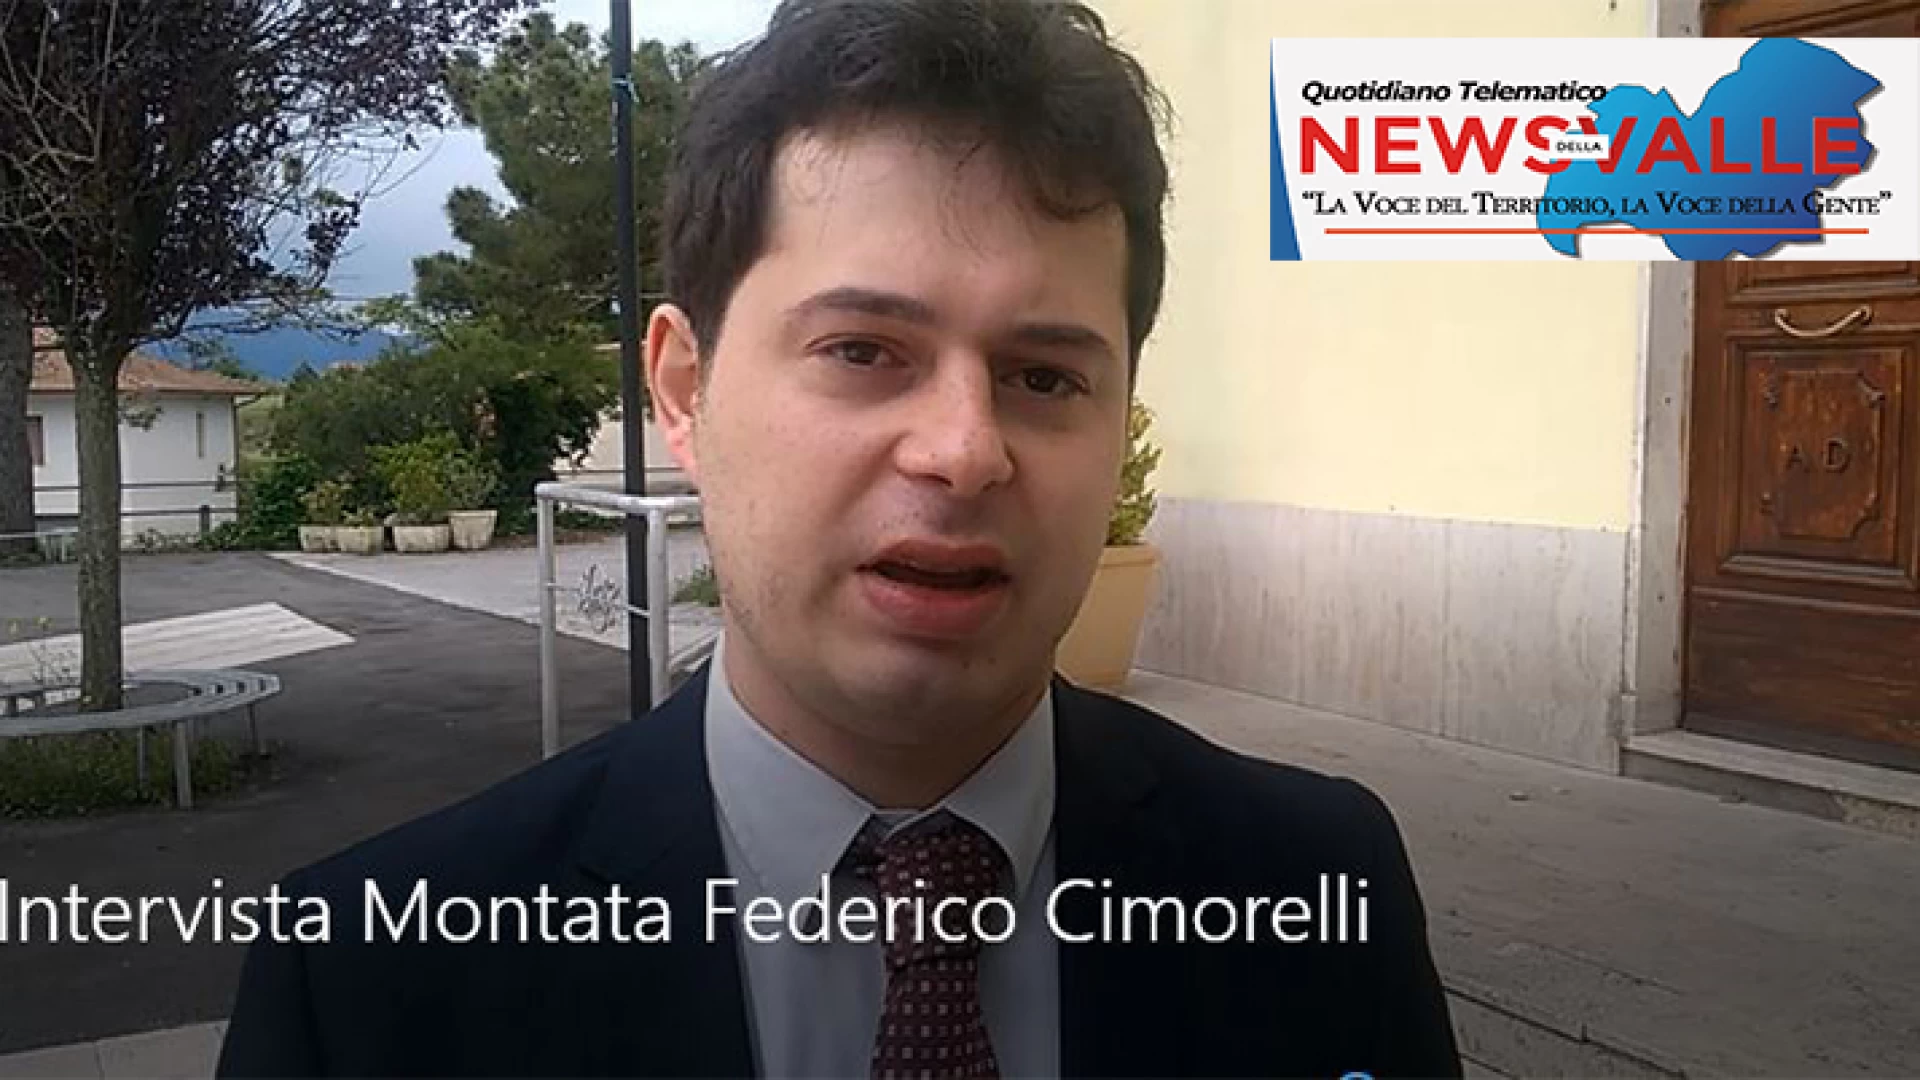 Montaquila: Ambiente e salute dei cittadini. Federico Cimorelli illustra i punti cardine del suo impegno politico. La video intervista